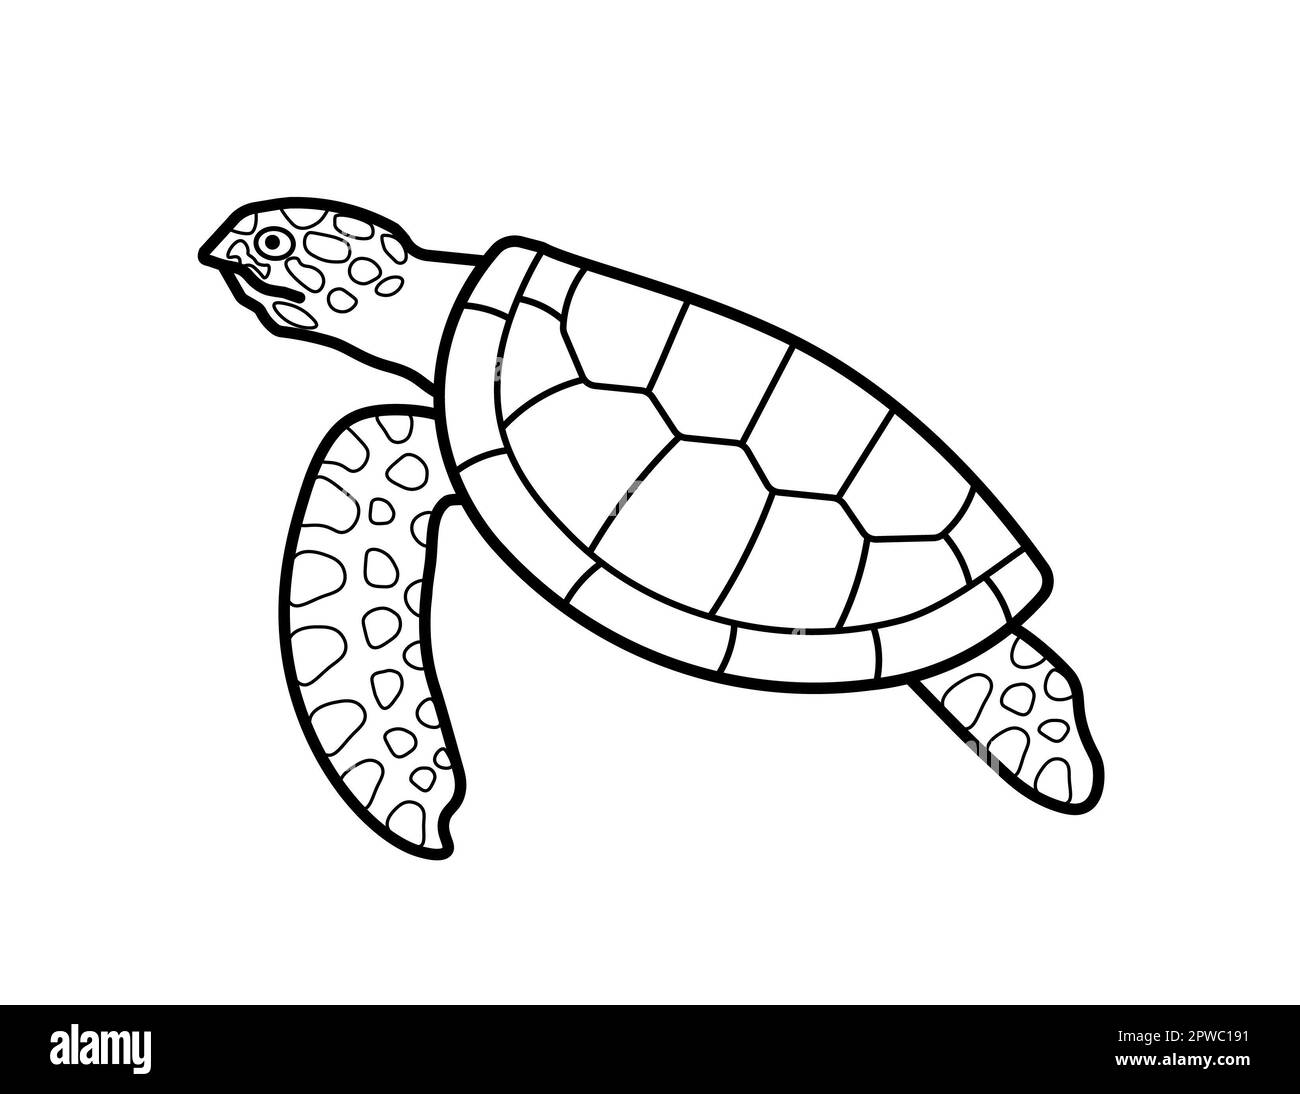 Meeresschildkröten schwimmen isoliert auf weißem Hintergrund. Wildtier- und Naturschutzkonzept. Abbildung Schwarzweißzeichnung. Stockfoto